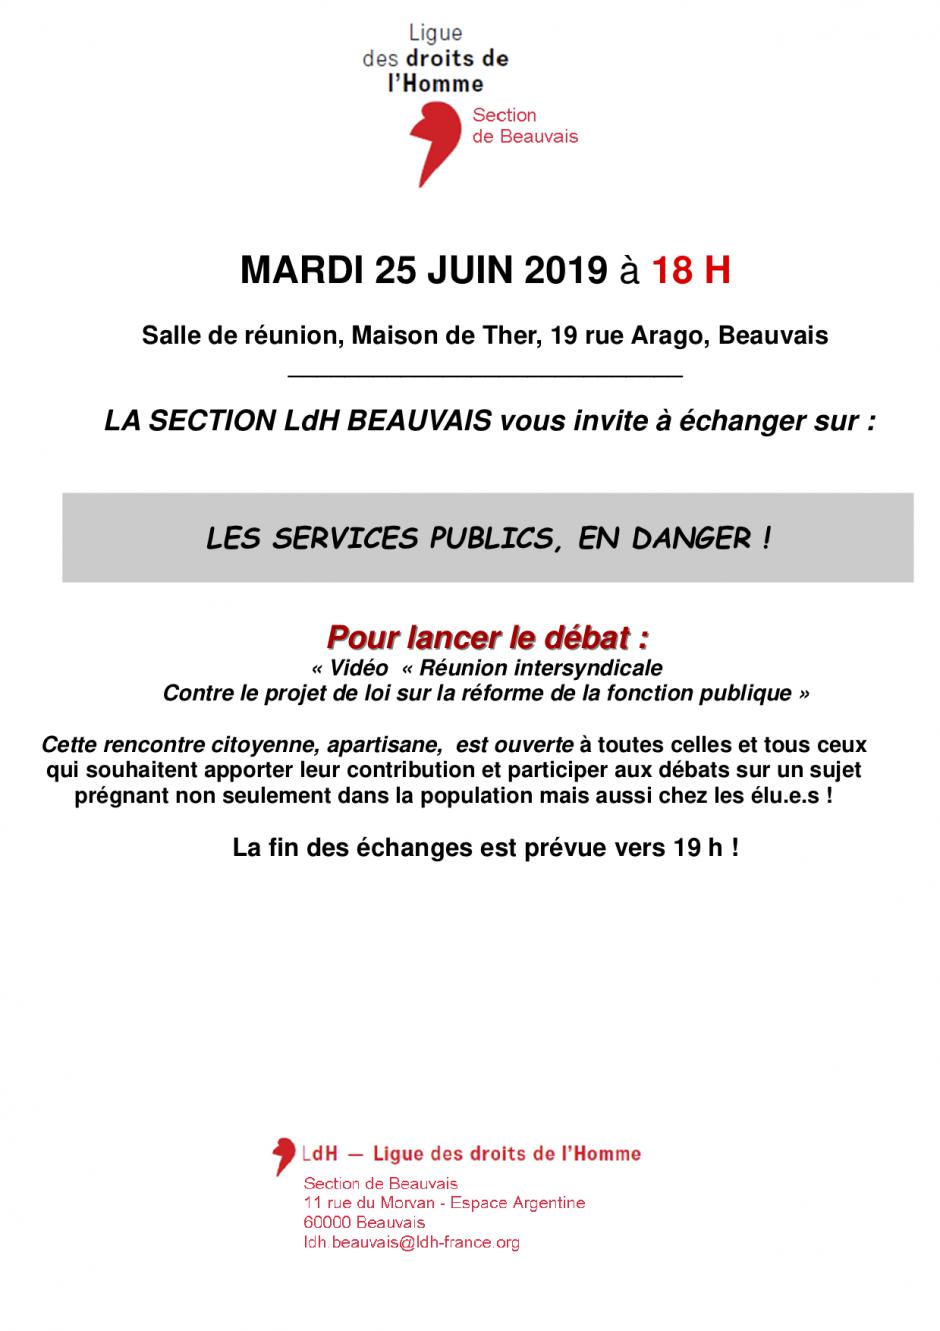 25 juin, Beauvais-LDH-Rencontre citoyenne « Les services publics, en danger »